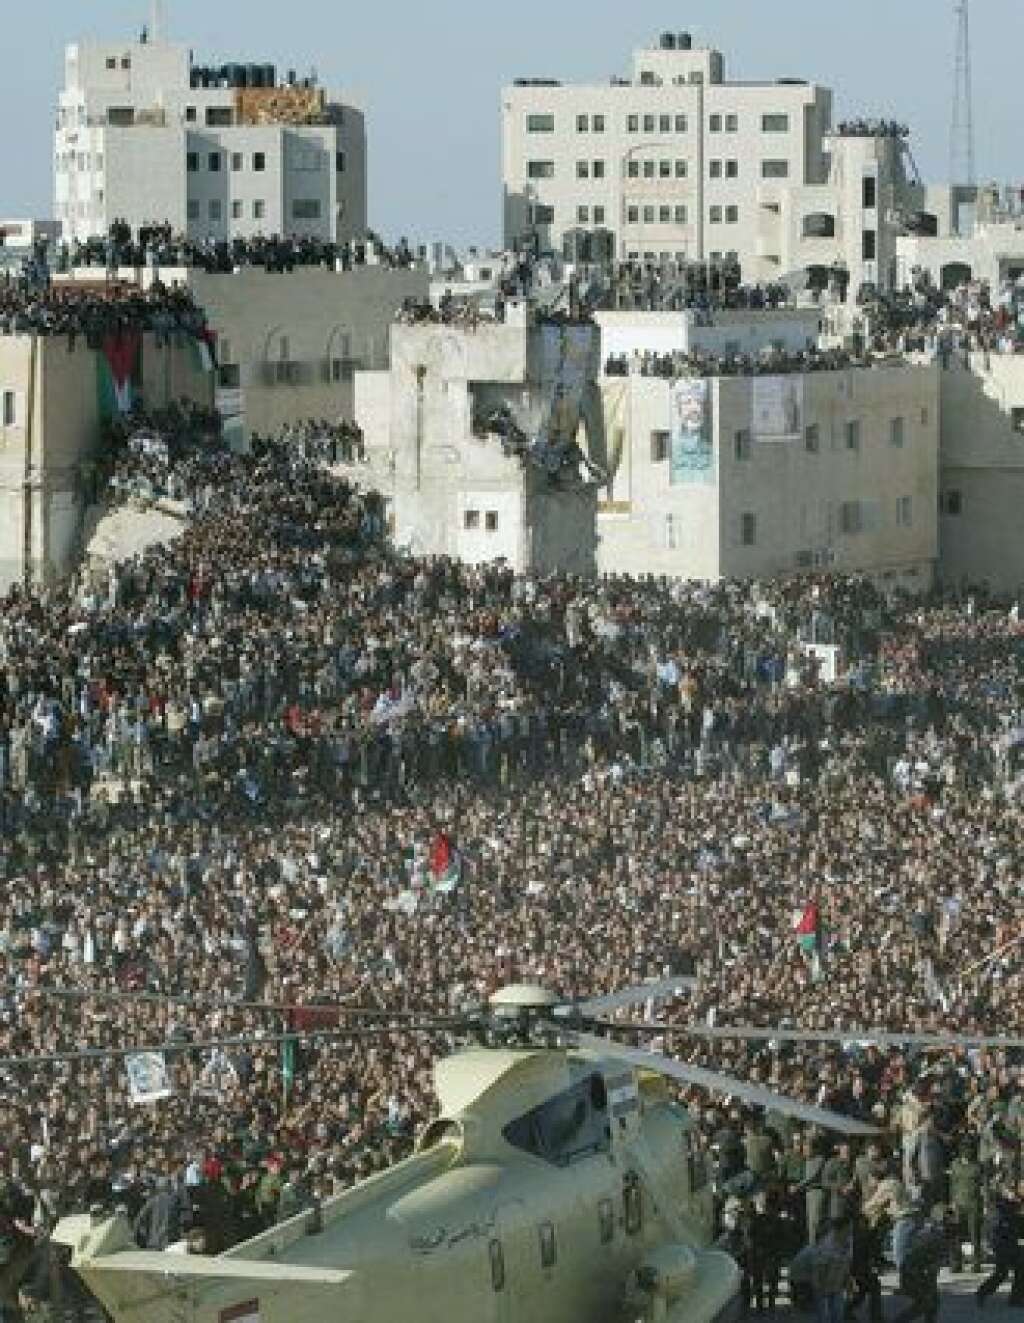 Les funérailles de Yasser Arafat - Le cercueil ainsi que les occupants ont pu finalement sortir de l’appareil après une bonne vingtaine de minutes pendant lesquelles les forces de l’ordre ont dû tirer des rafales en l’air pour tenter d’écarter la foule.